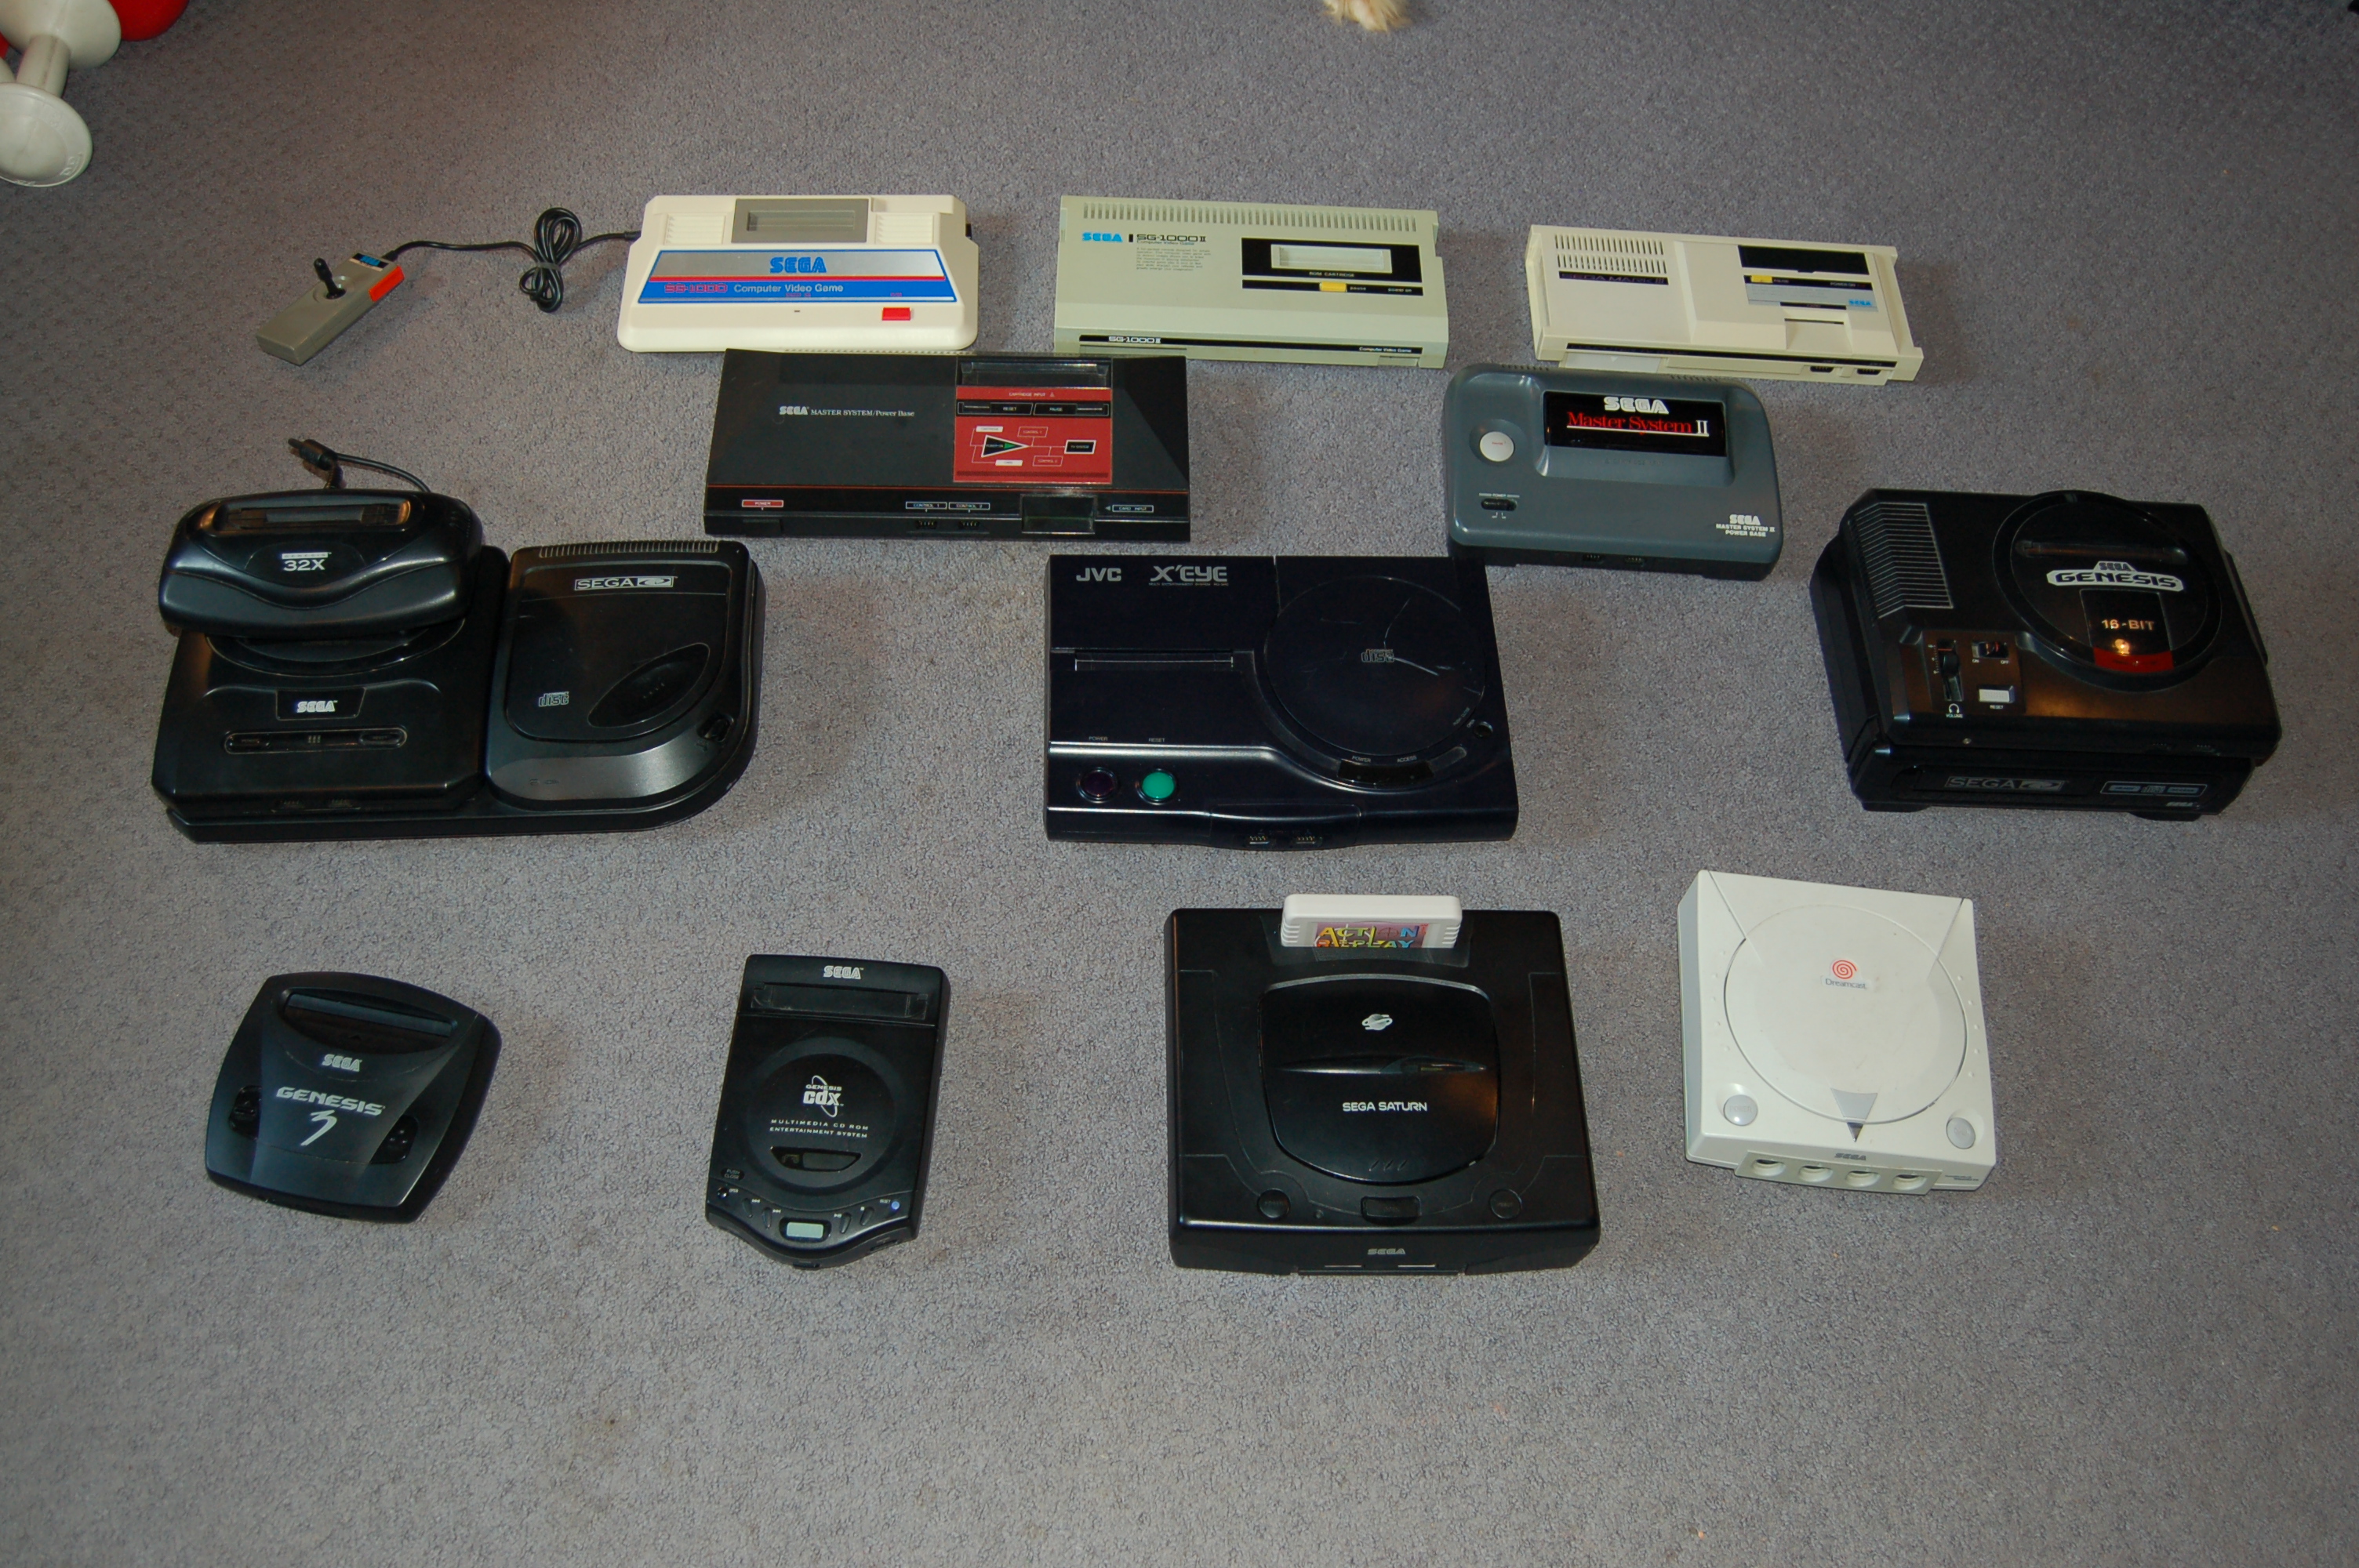 SG-1000, SG-1000 II, Mark III,  Master System, Master System II, Genesis 2 w/ CD and 32X, JVC X'Eye, Genesis 1 w/ CD, Genesis 3, CD-X, Saturn, Dreamcast